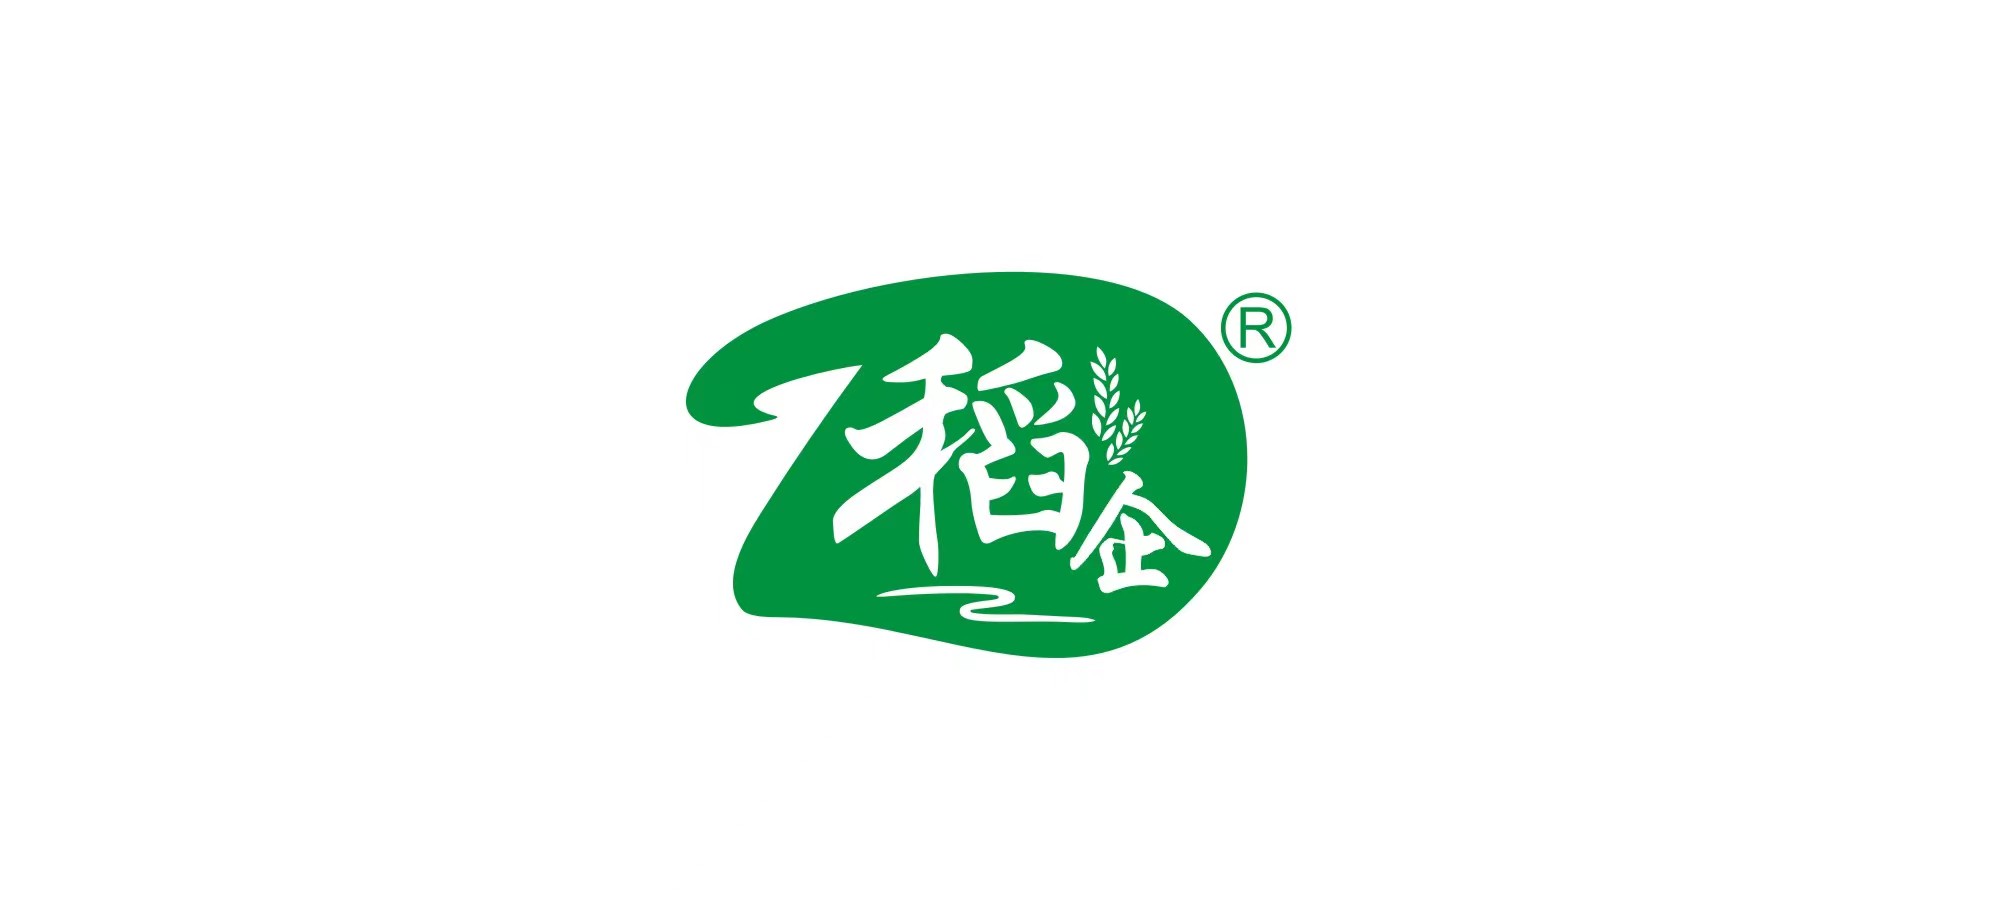 Jiangxi Huangmao Industry Co., Ltd. brand is 